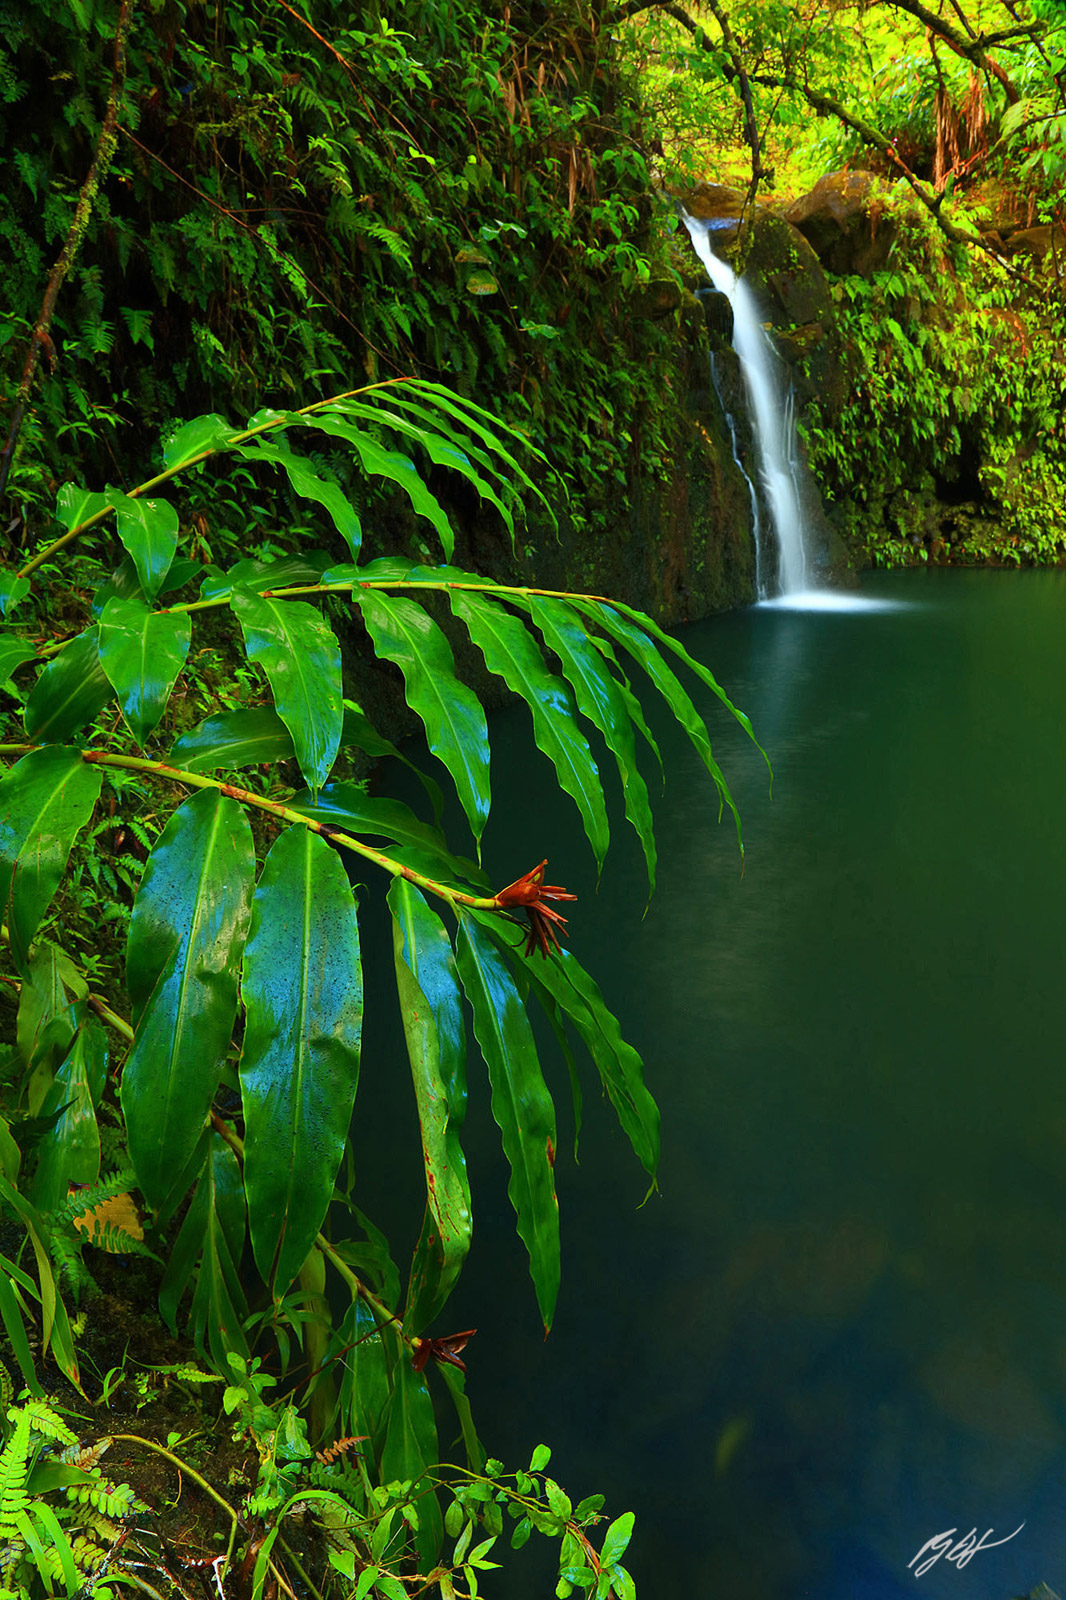 Secret Waterfall along the Road to Hana on the island of Maui, Hawaii